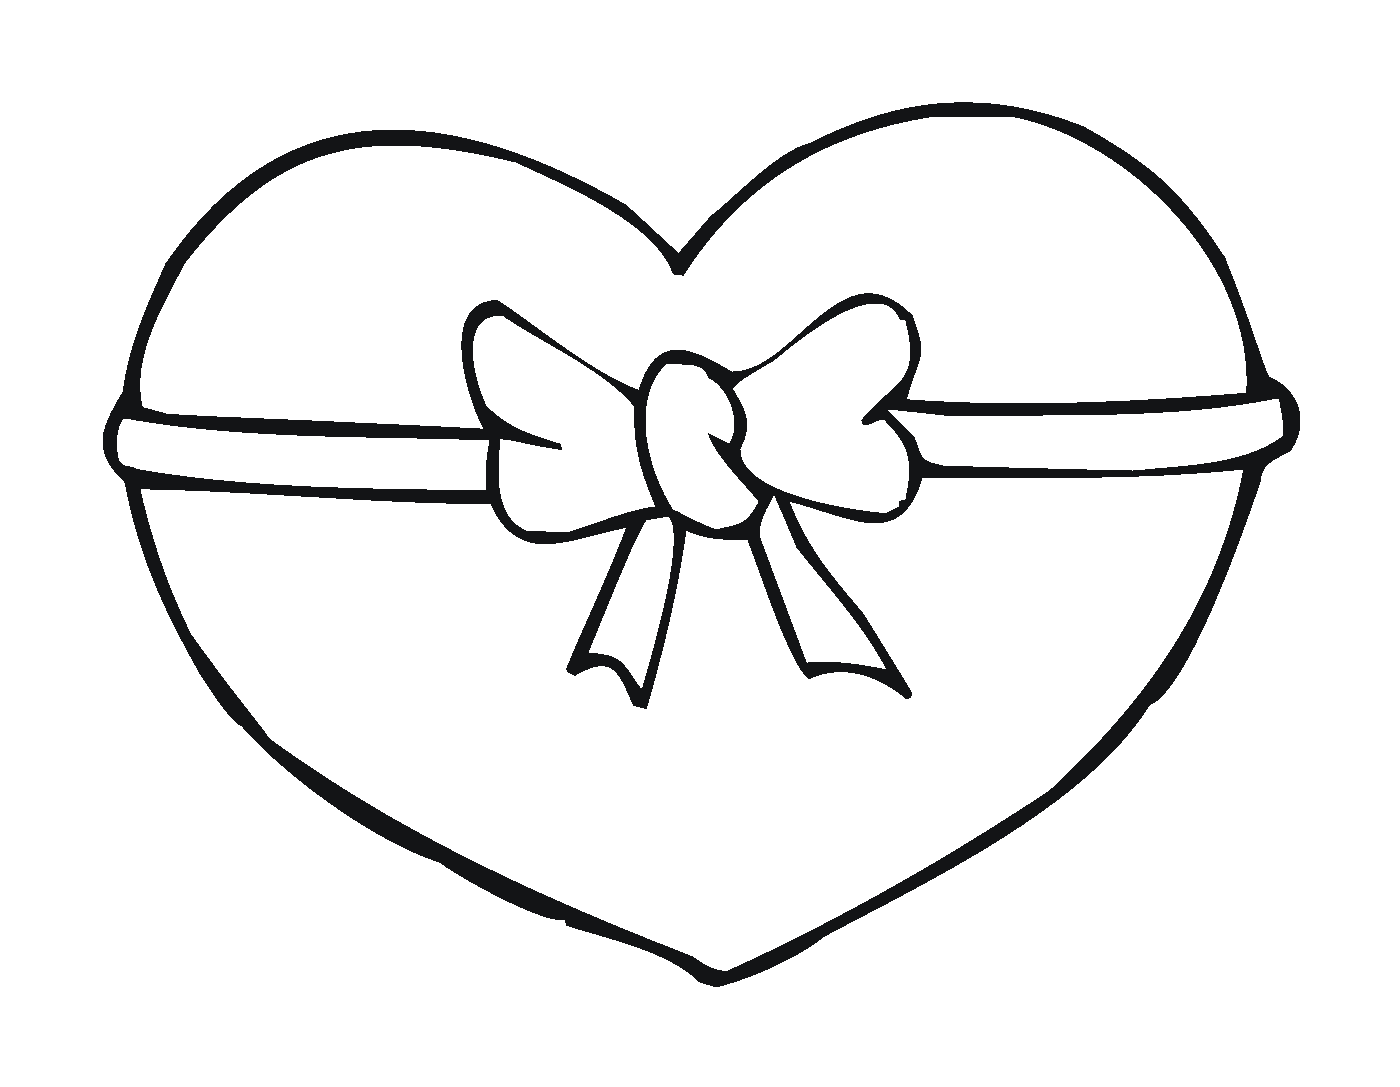  Ein Herz mit einem Knoten 